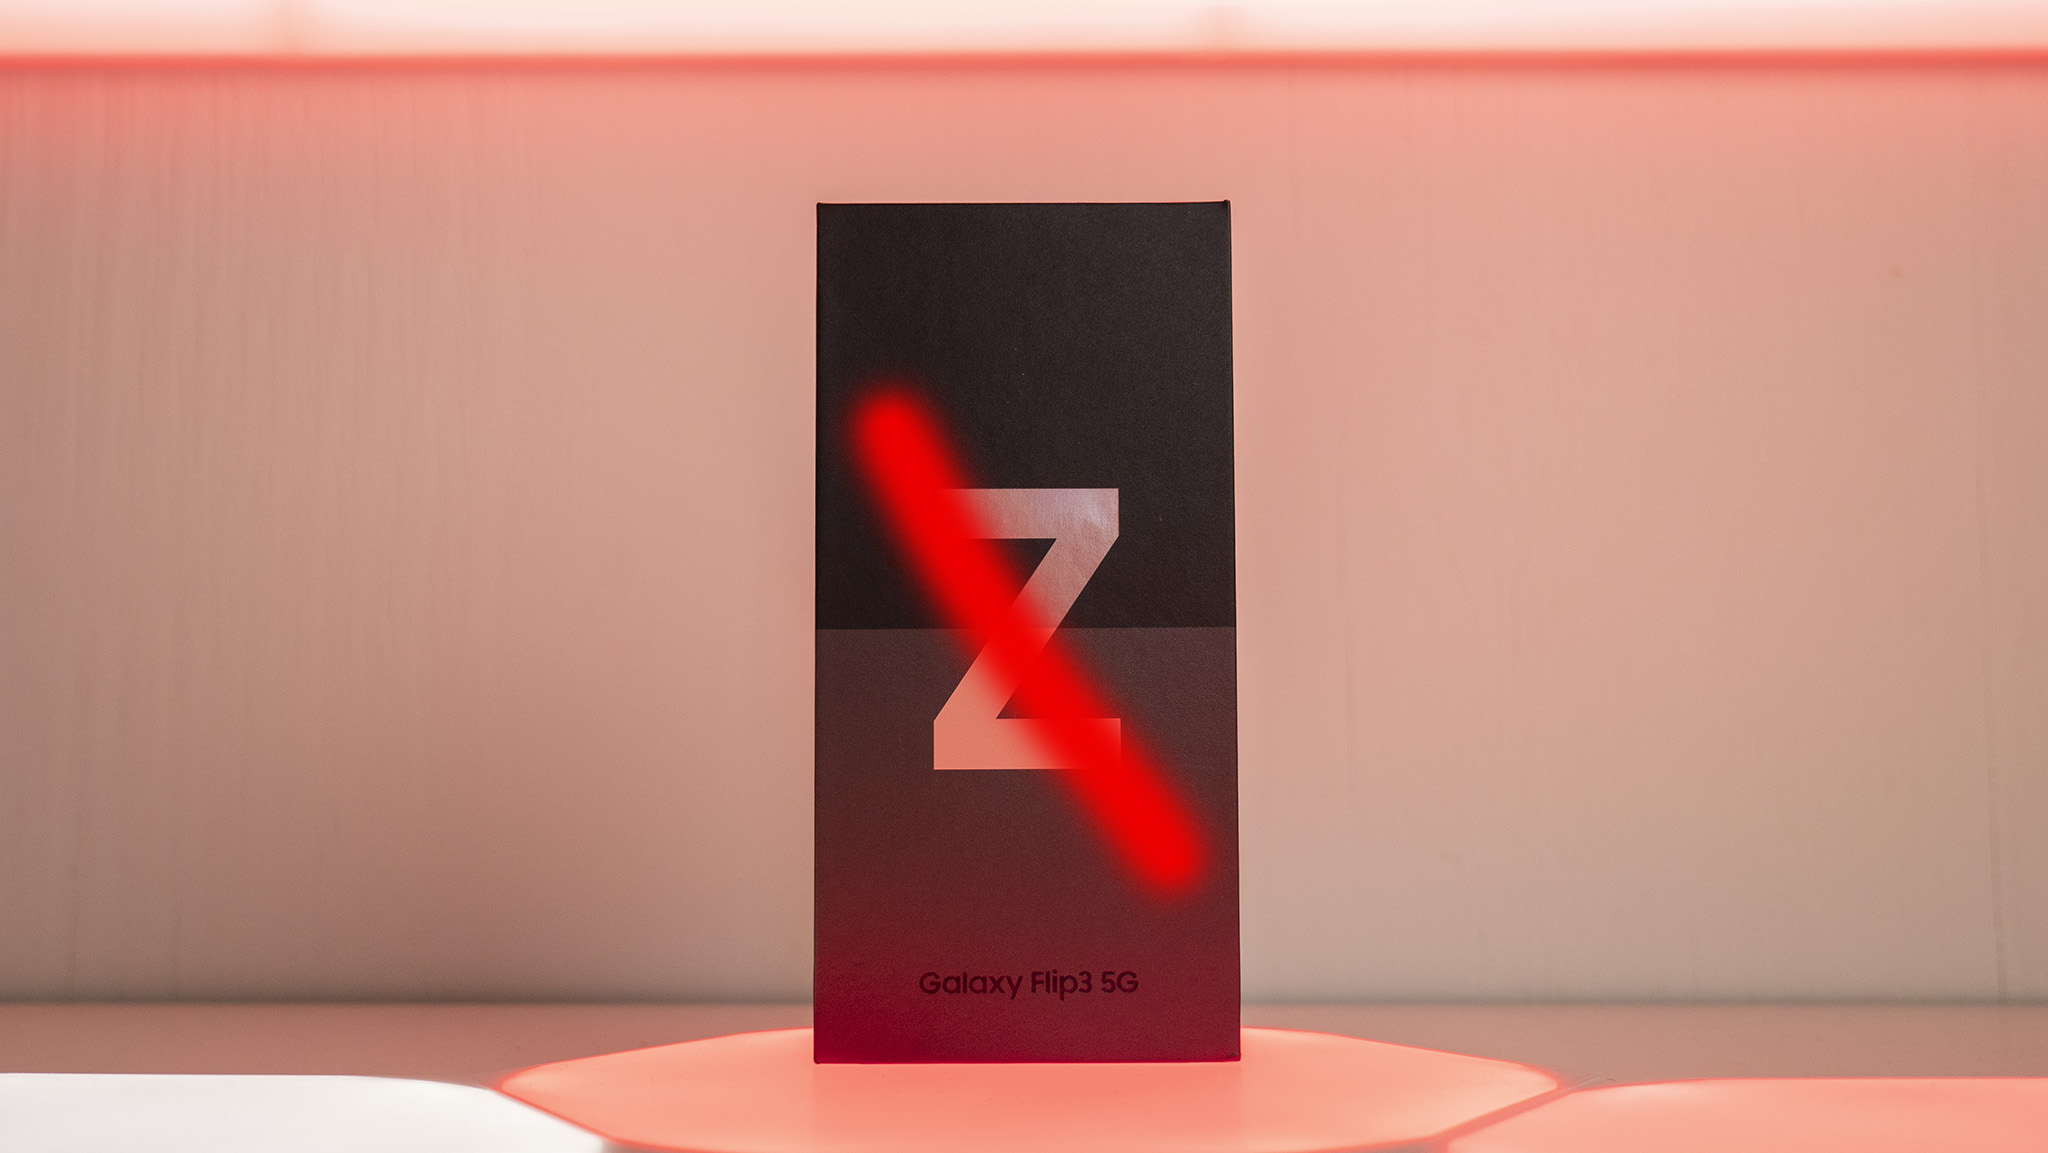 Galaxy Z Flip 3 box with Z removed